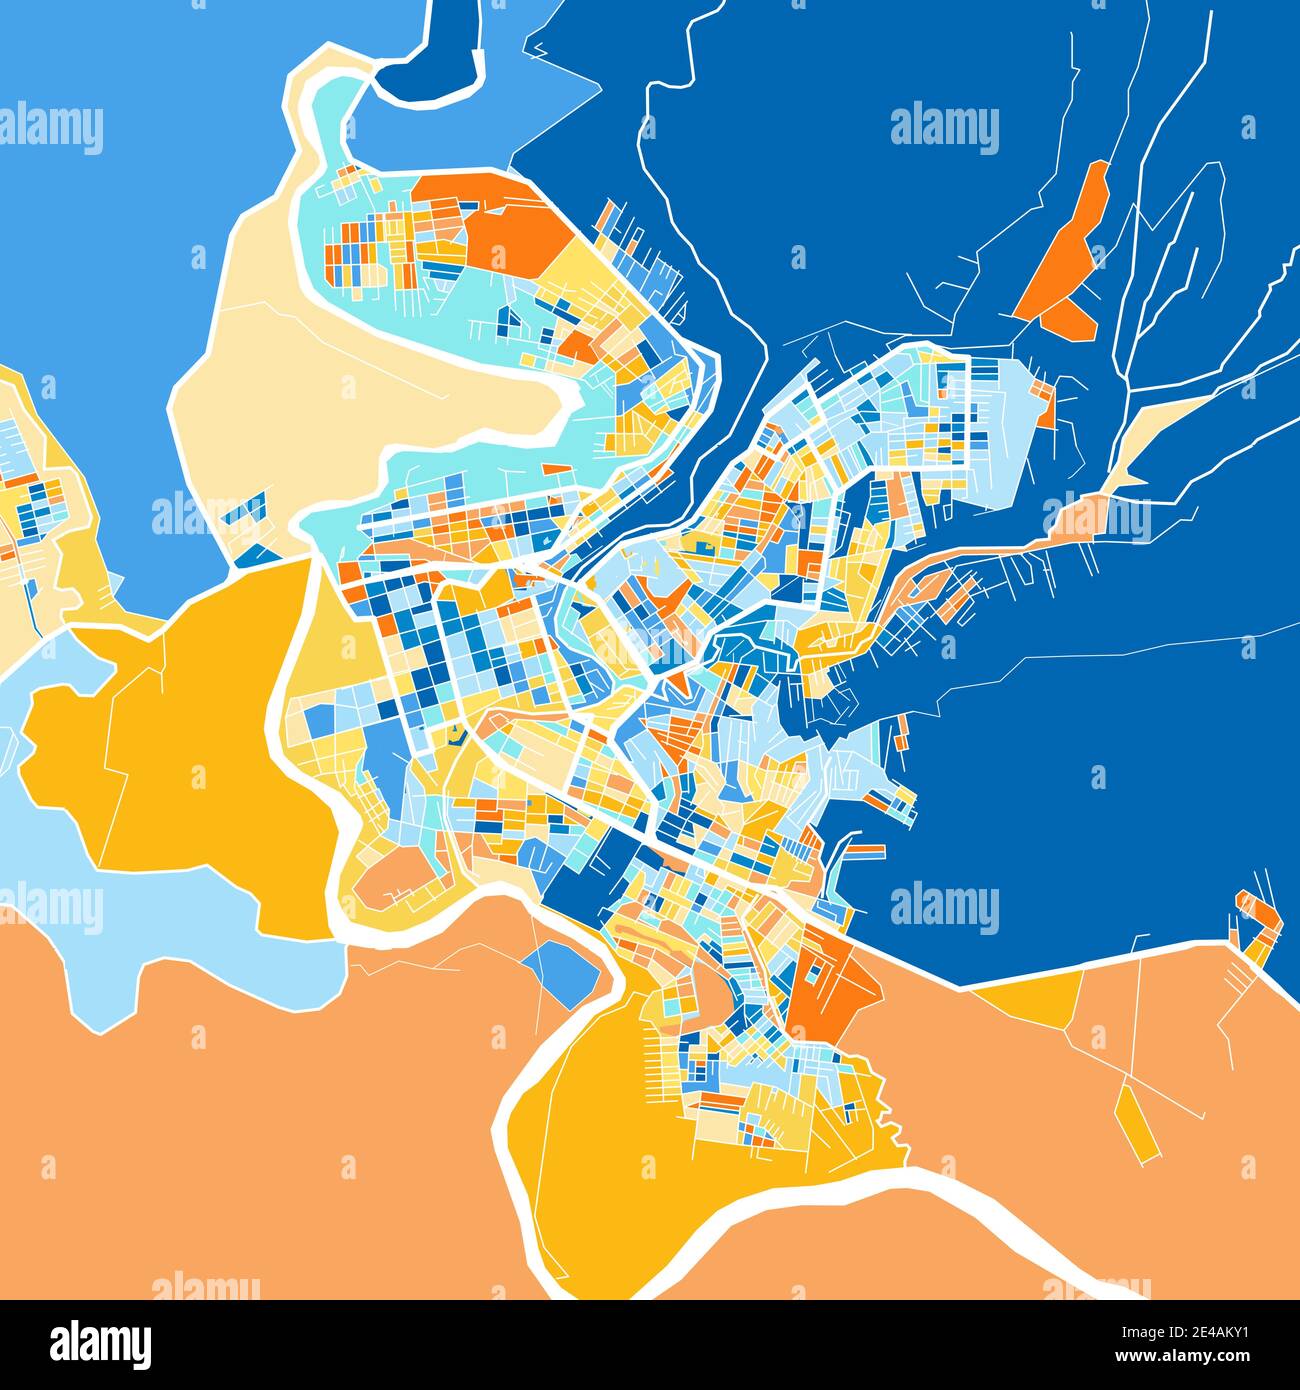 Farbkunstkarte von Florencia, Kolumbien, Kolumbien in Blau und Orangen. Die Farbabstufungen in der Florencia-Karte folgen einem zufälligen Muster. Stock Vektor